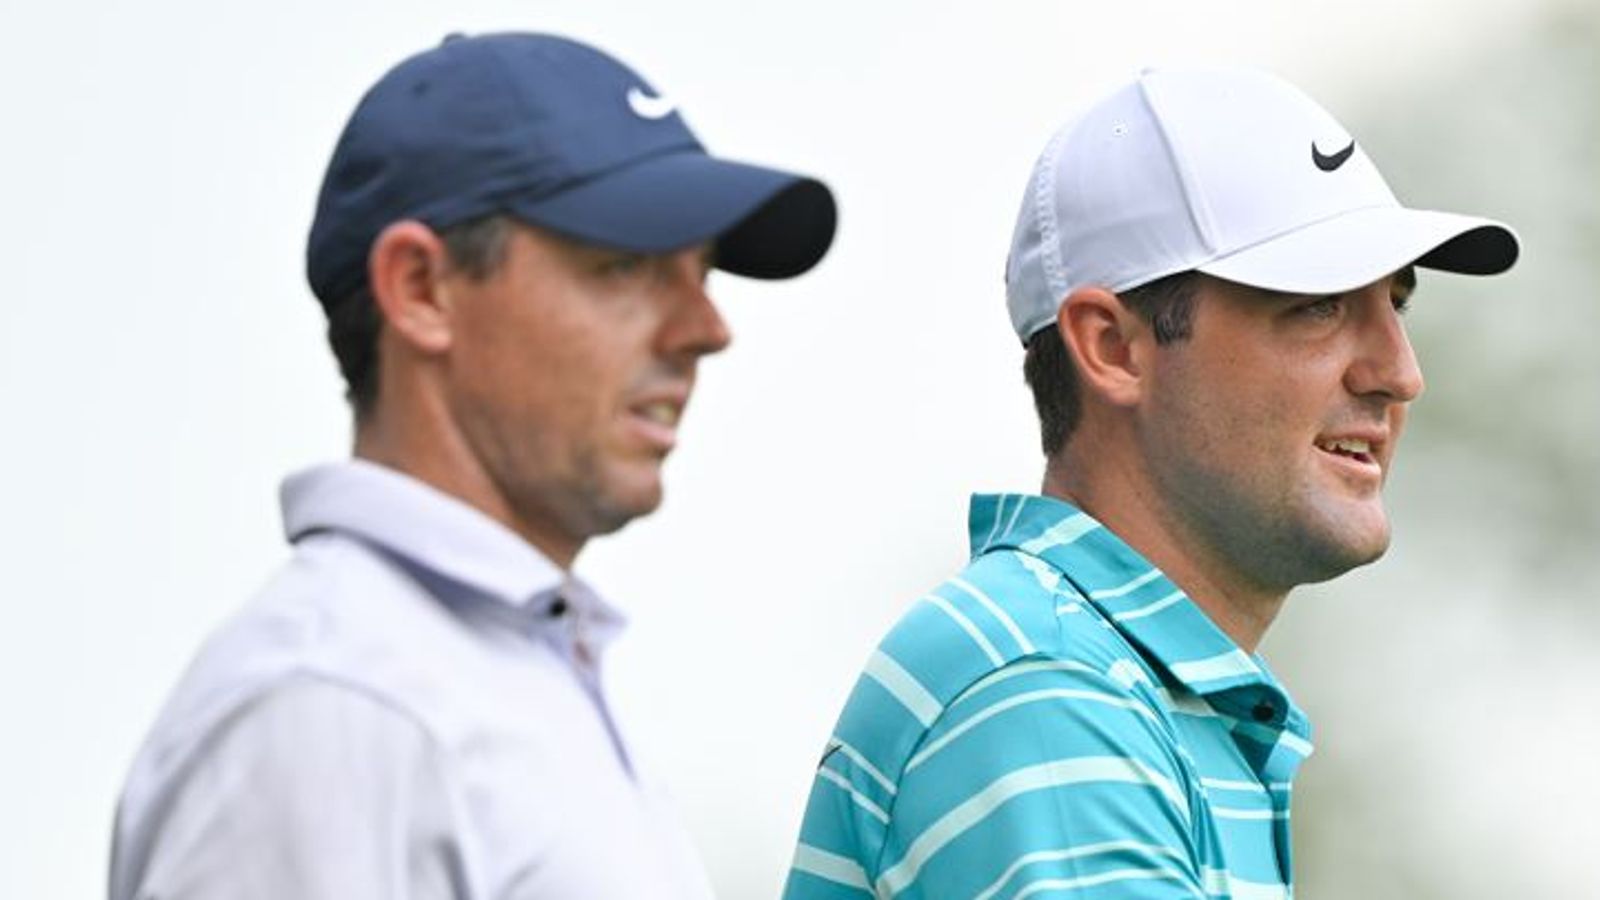 Чемпионат PGA: Рори Макилрой — тот человек, которого стоит победить в Валгалле, а не Скотти Шеффлера?  |  Новости гольфа